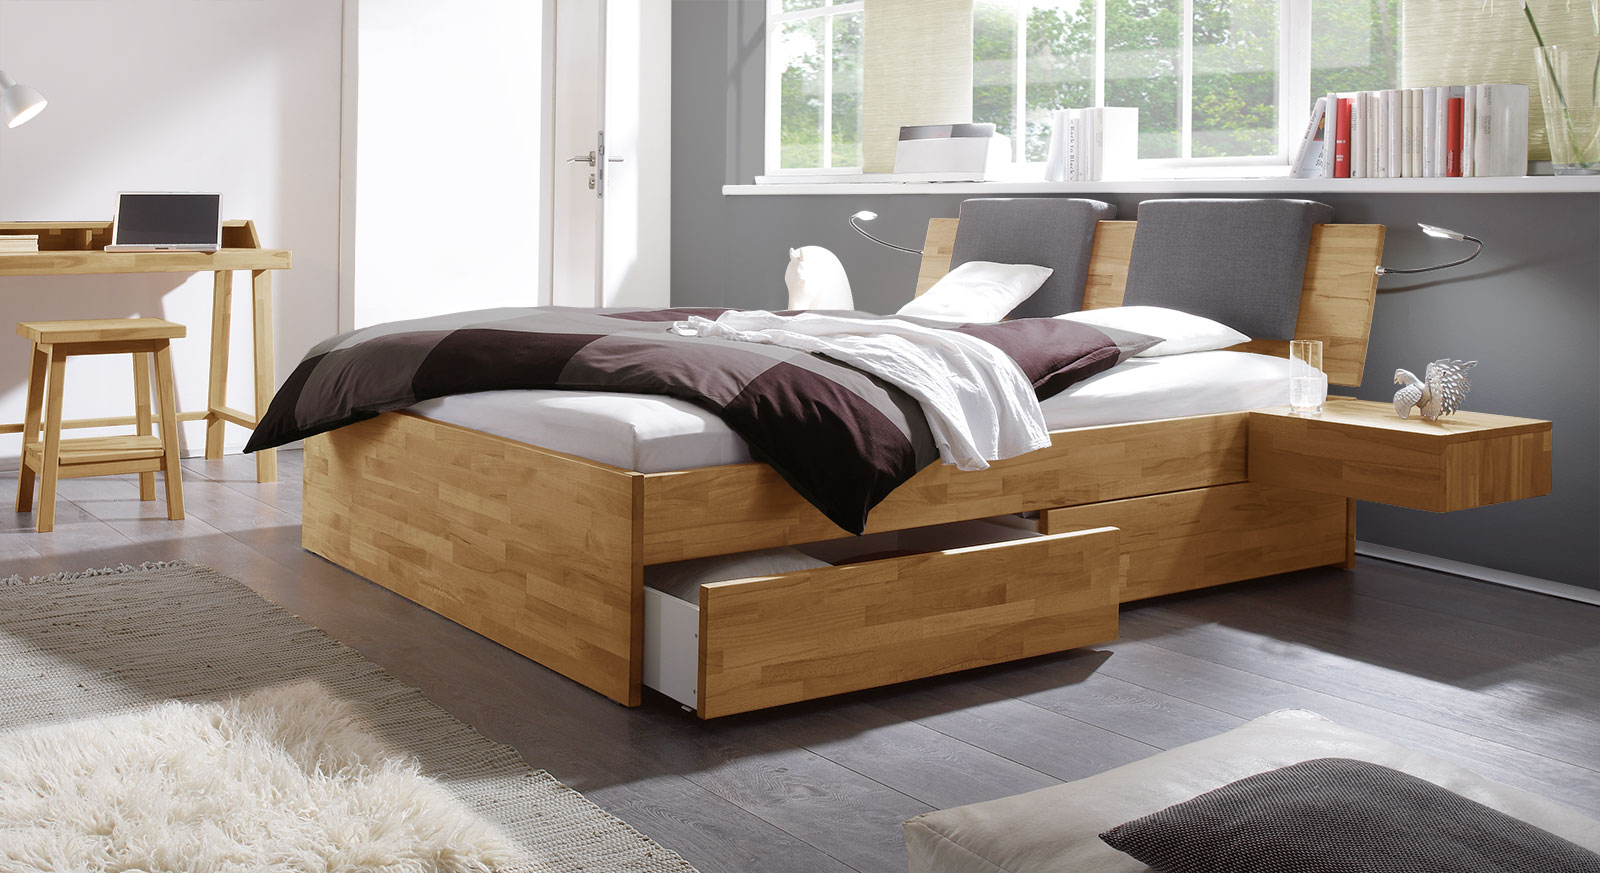 Doppelbett mit Bettkasten - 200x200 cm - Kernbuche natur - Stauraumbett Manchester